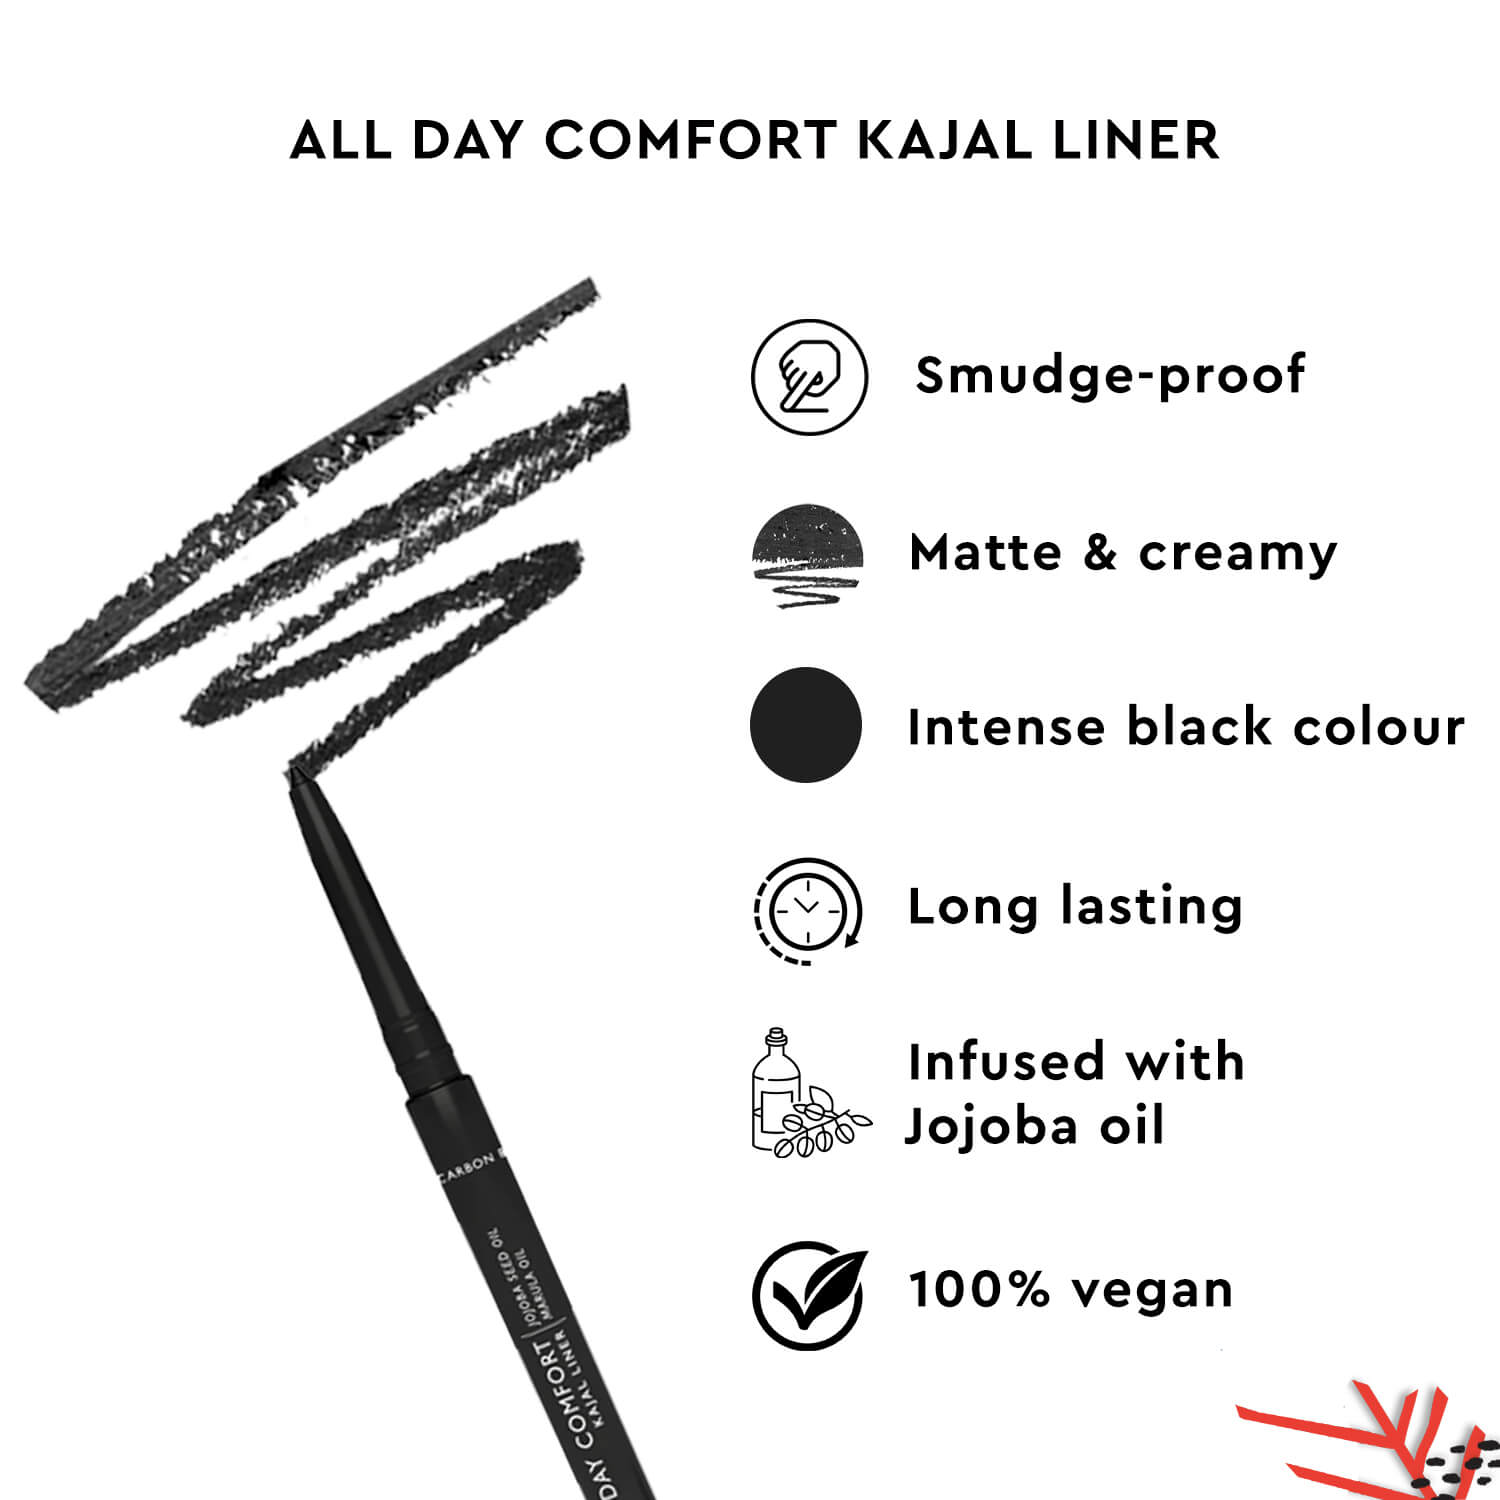 All-Day Comfort Kajal Liner